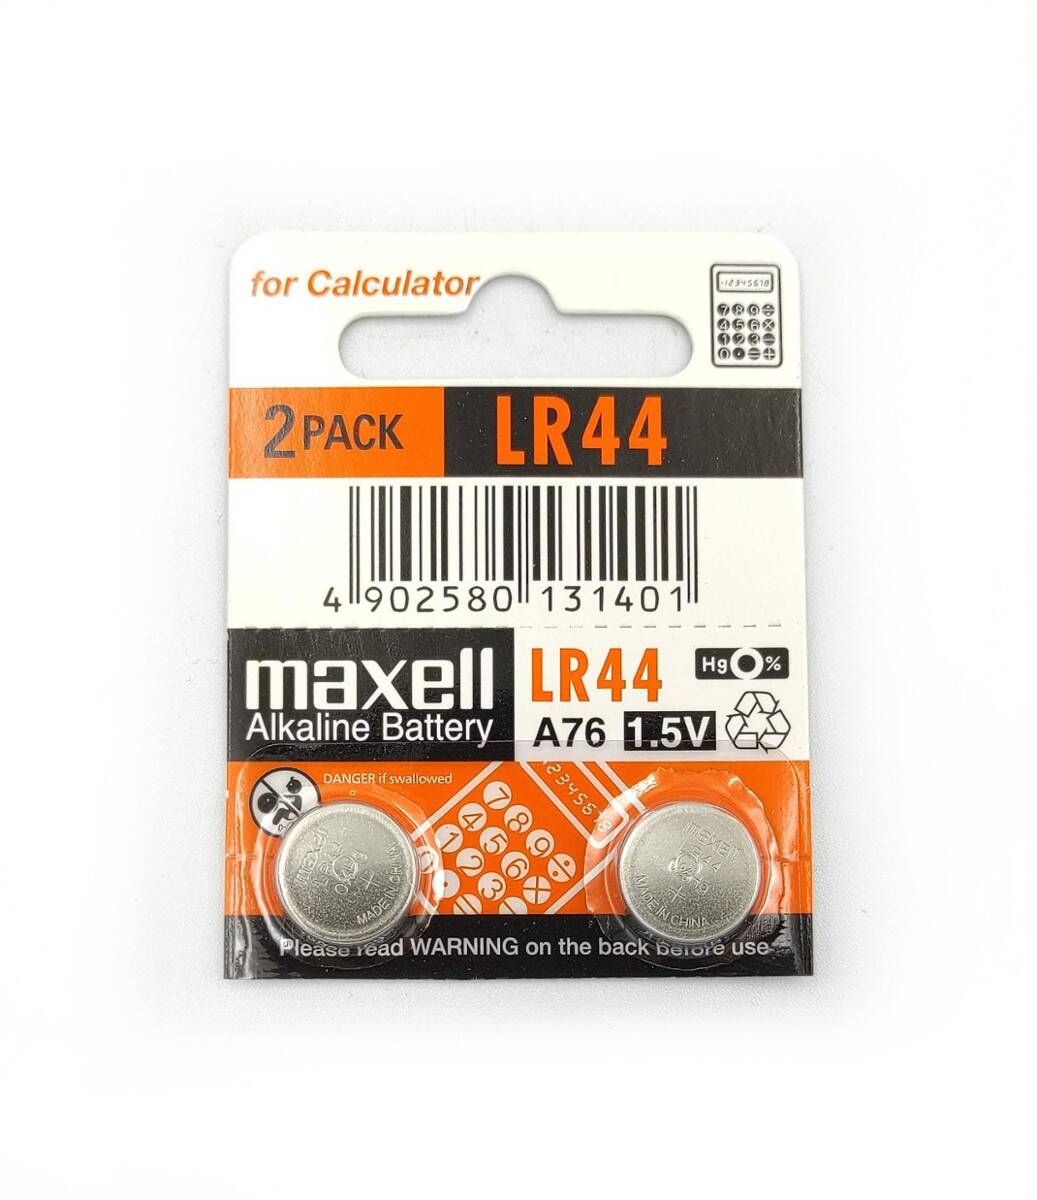 MAXELL bateria alkaliczna LR44 1,5V do przyrządów pomiarowych (zamiennik SR44SW) (Zdjęcie 2)